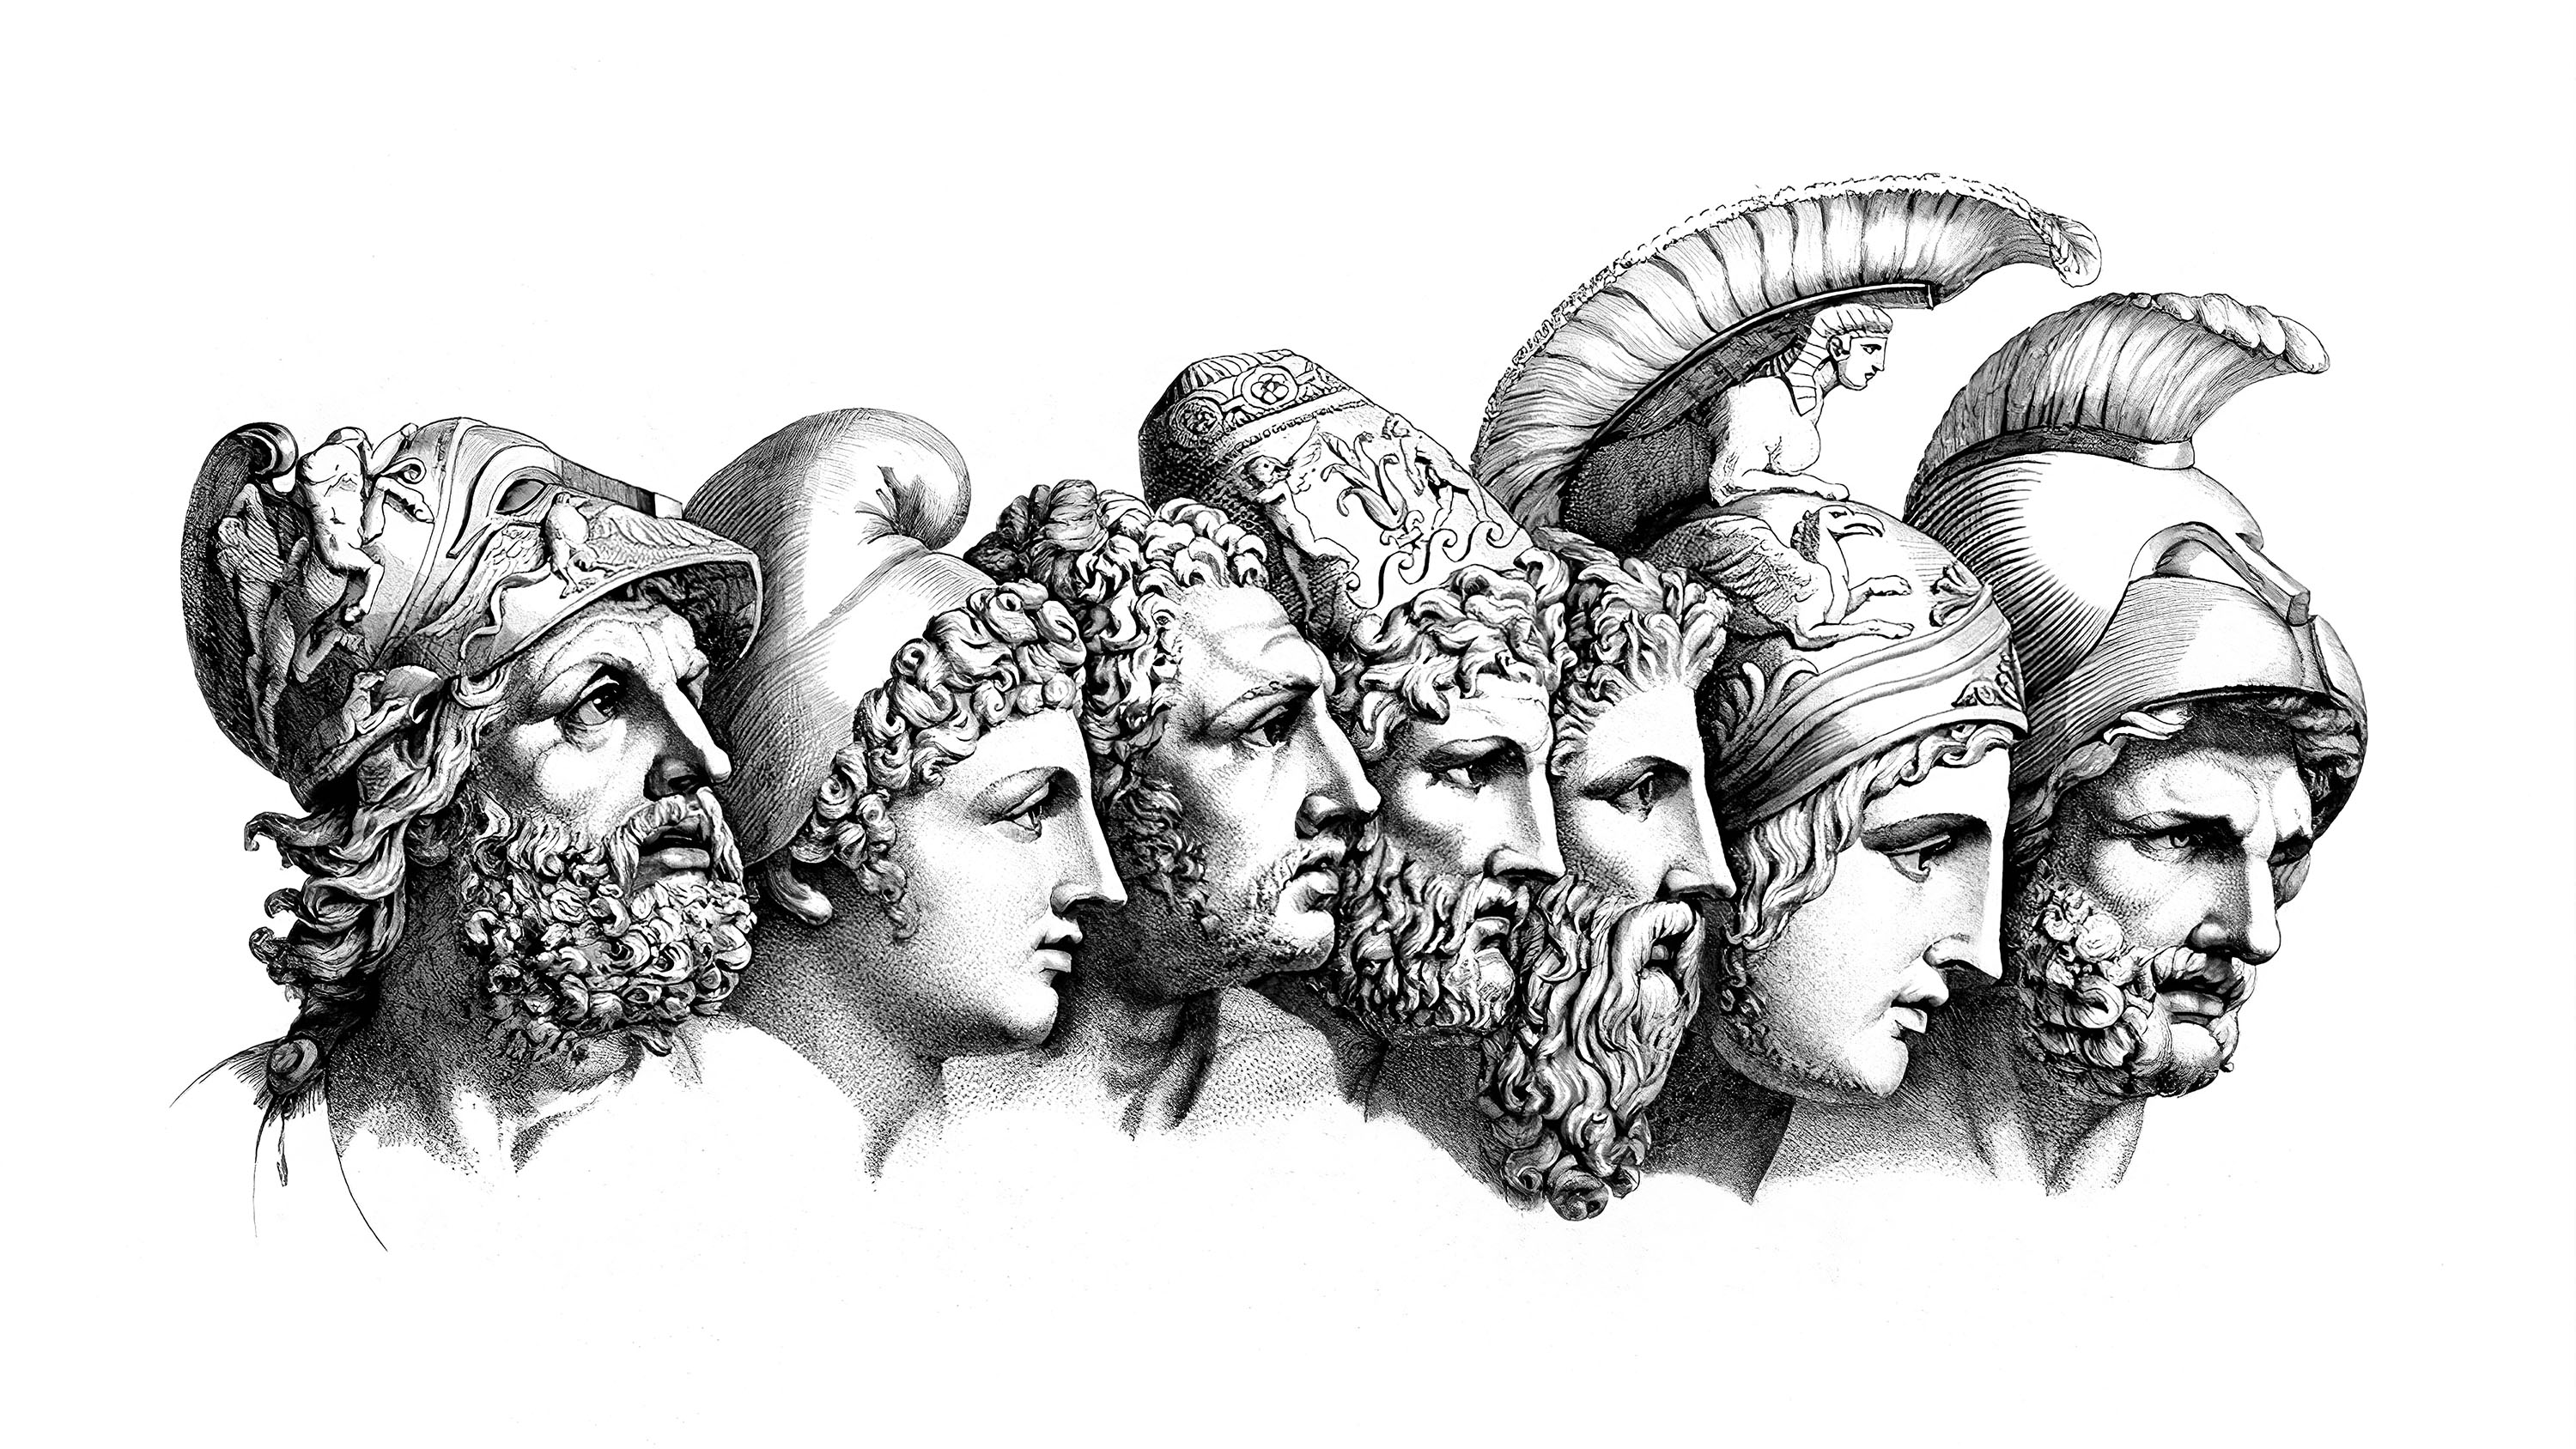 Greek Heroes From The Iliad Menelaus Paris Diomedes Odysseus Nestor Achilles Agamemnon Wilhelm Tisch 3000x1688